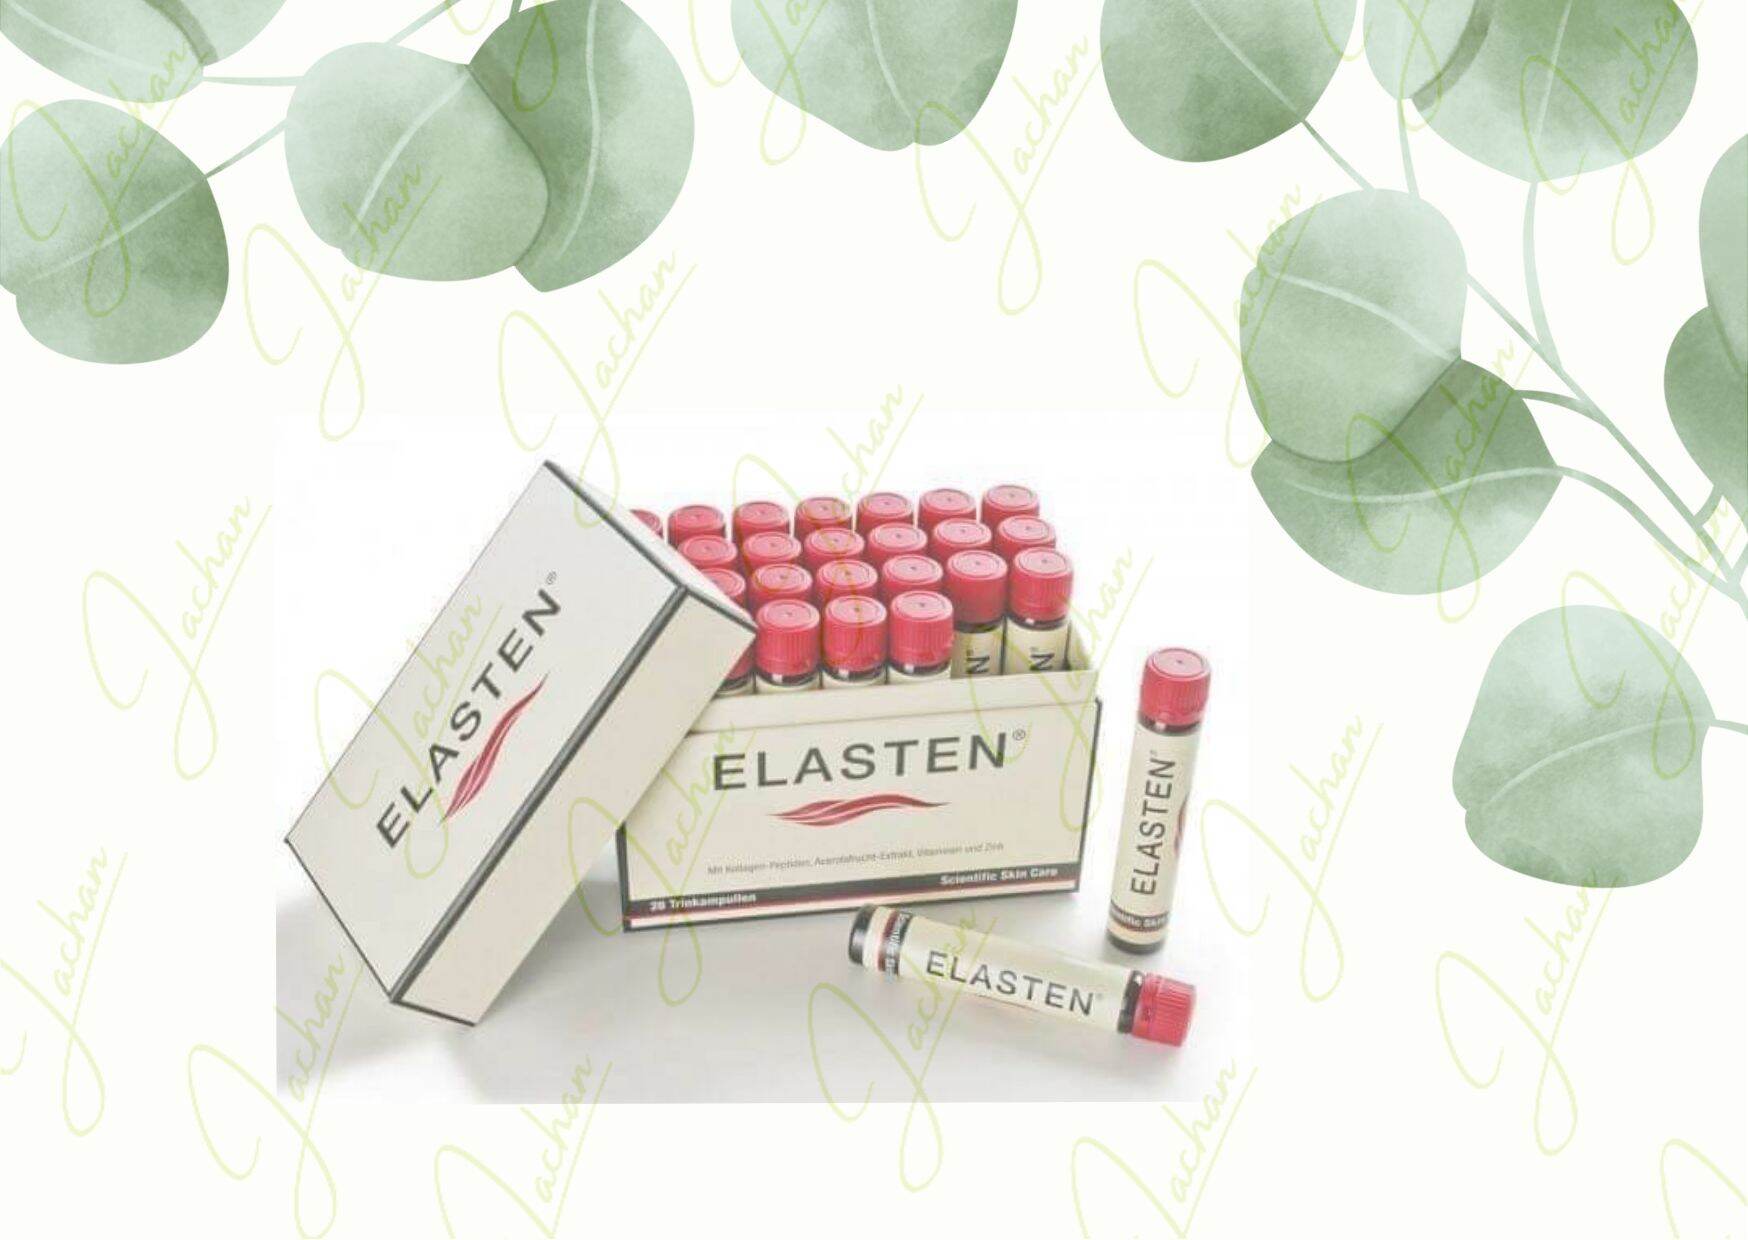 Collagen Elasten nhập khẩu